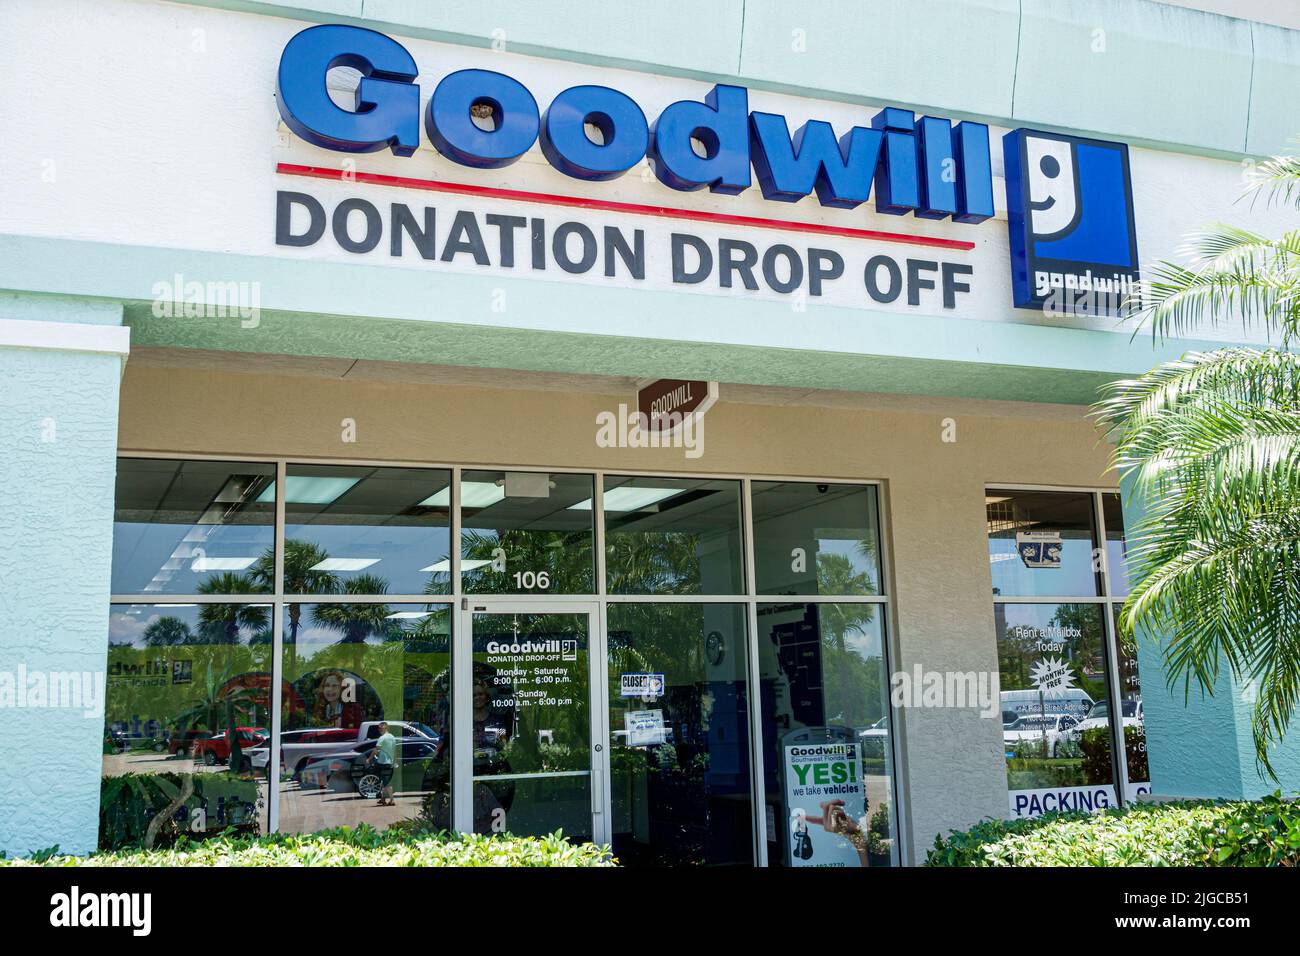 Bonita Springs Florida, Goodwill Donation Drop Off tienda escaparate, fuera de la entrada exterior Foto de stock